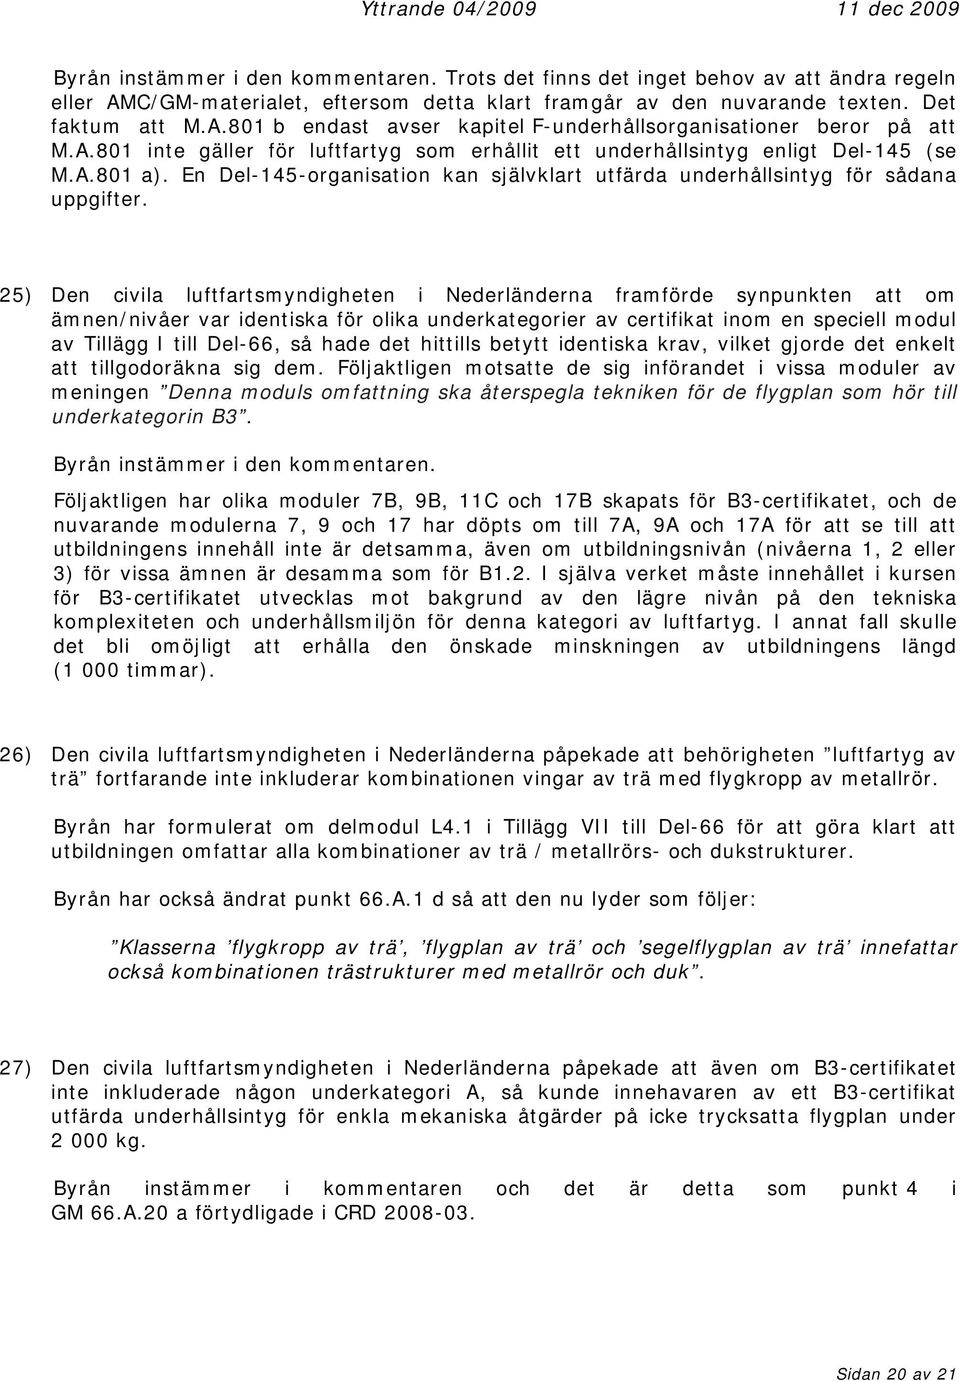 25) Den civila luftfartsmyndigheten i Nederländerna framförde synpunkten att om ämnen/nivåer var identiska för olika underkategorier av certifikat inom en speciell modul av Tillägg I till Del-66, så